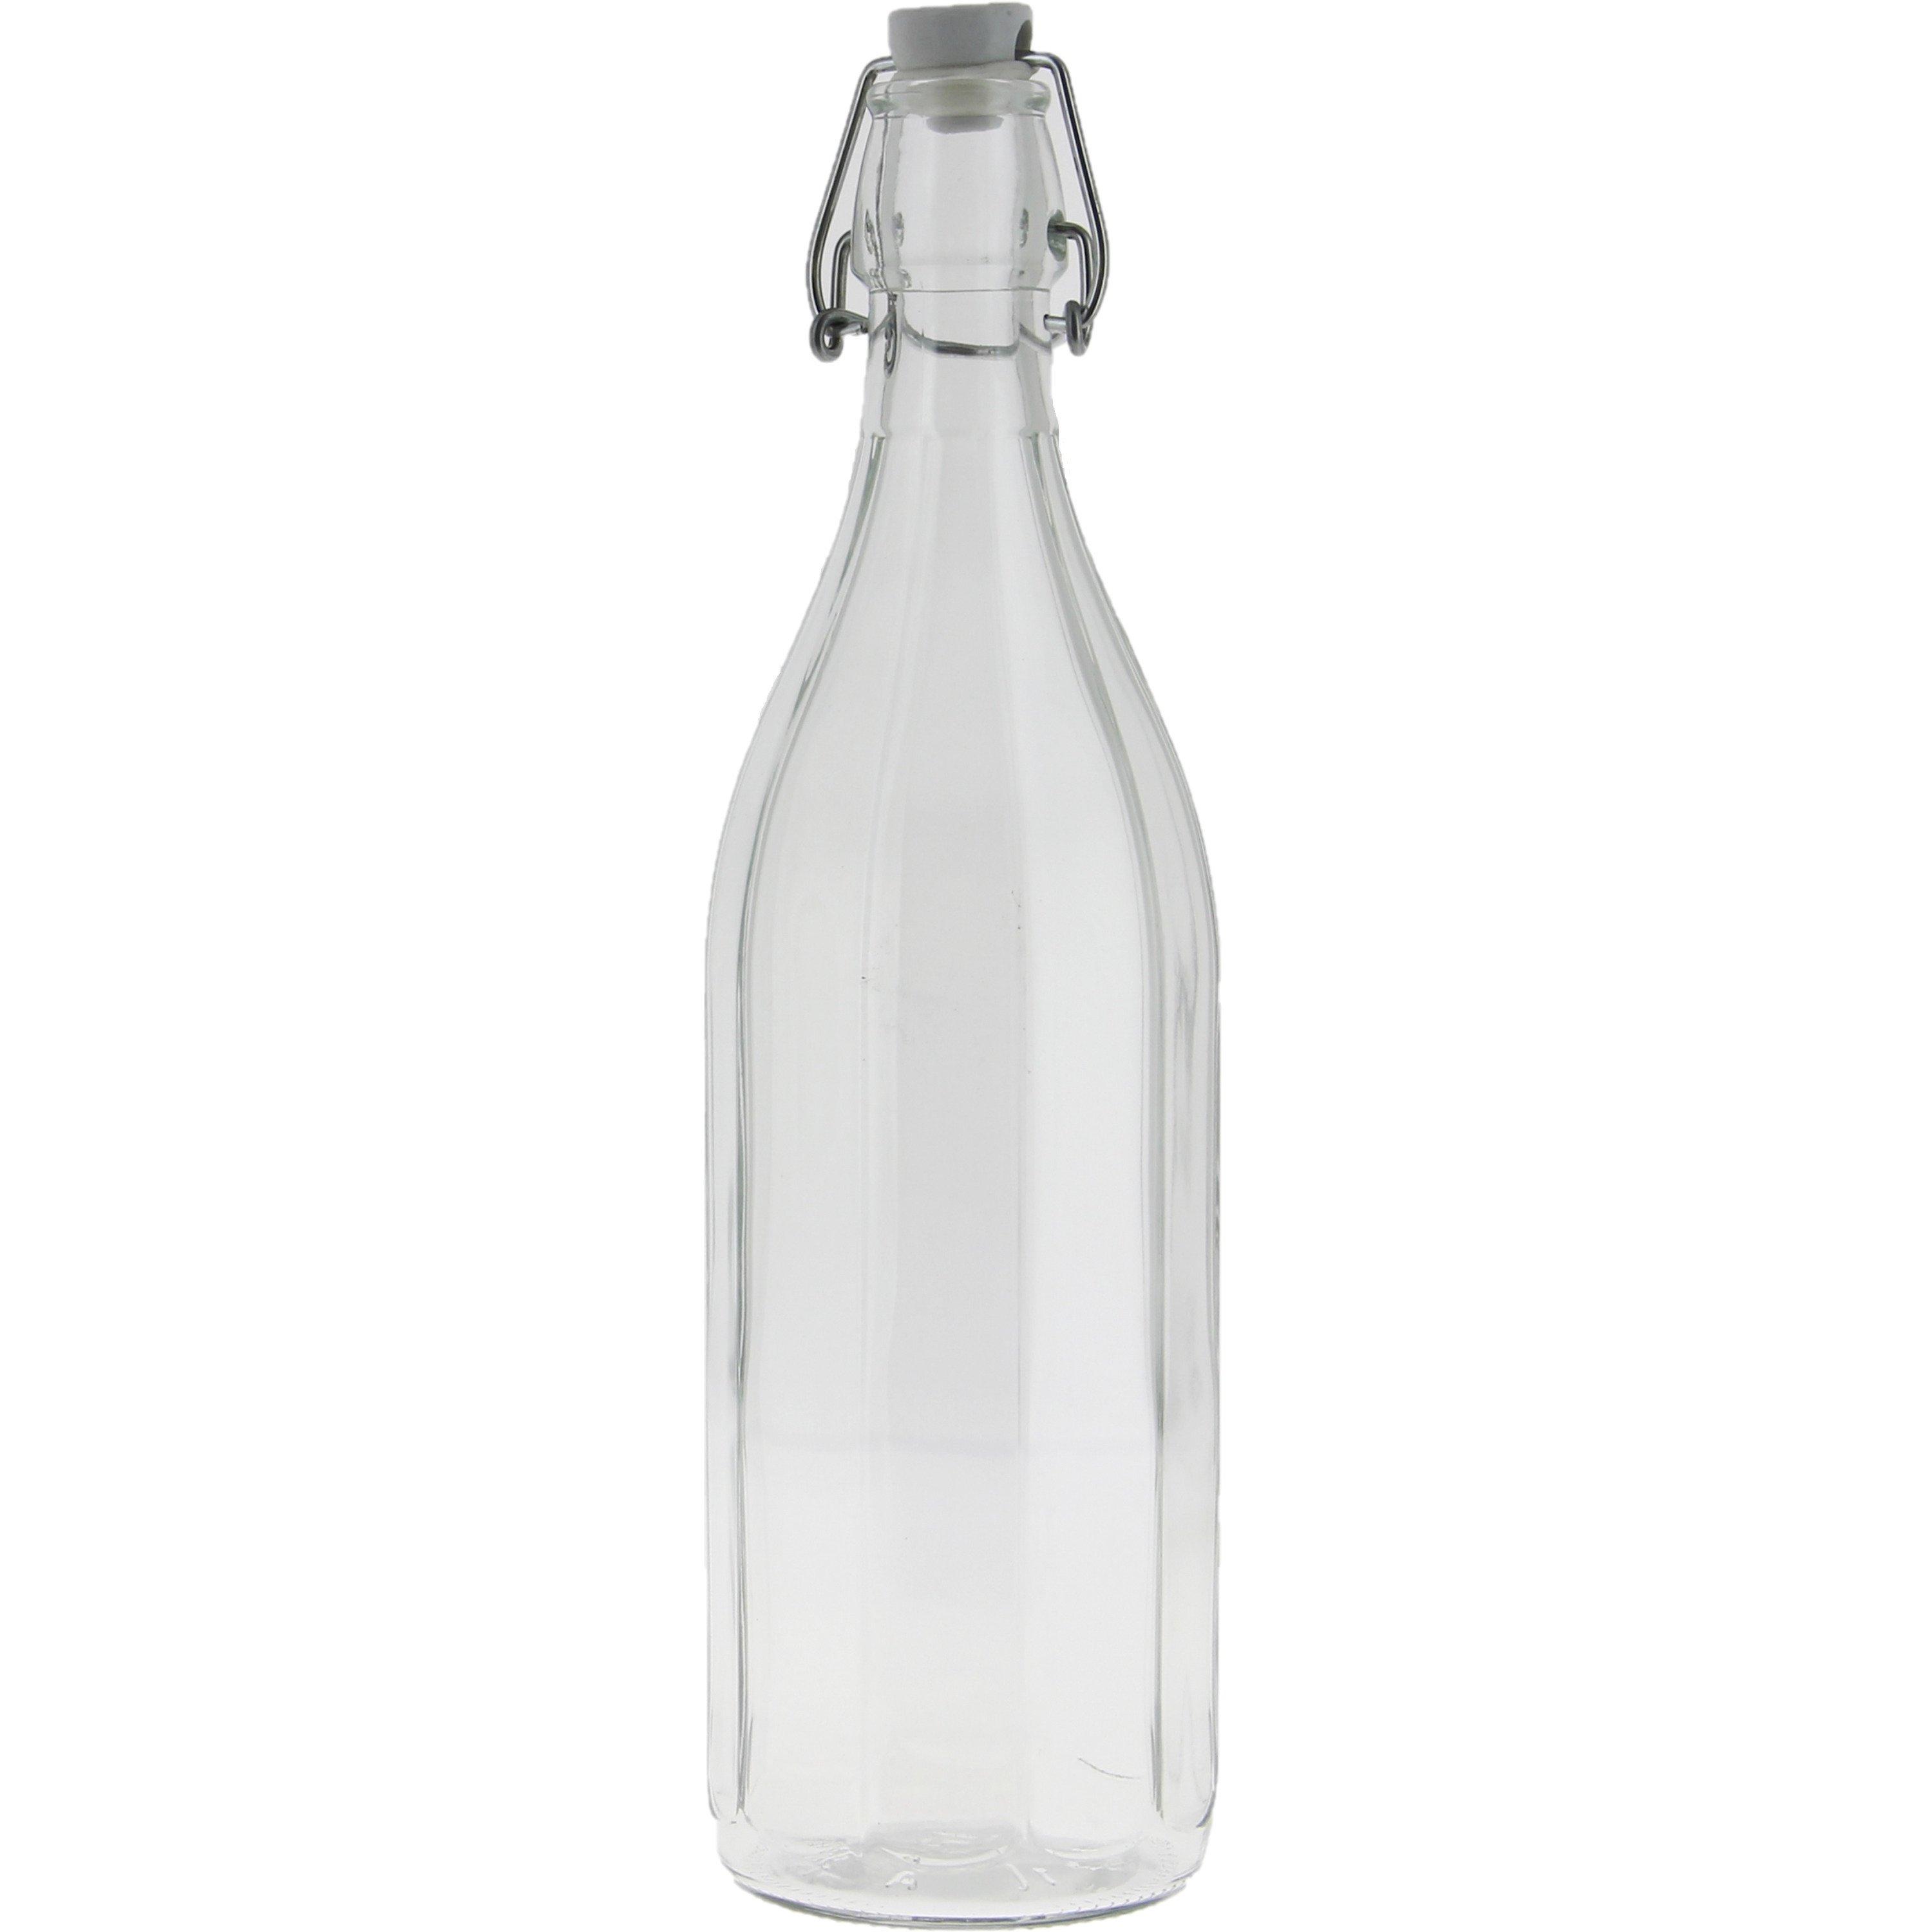 Glazen fles transparant met beugeldop van 1 liter-1000 ml